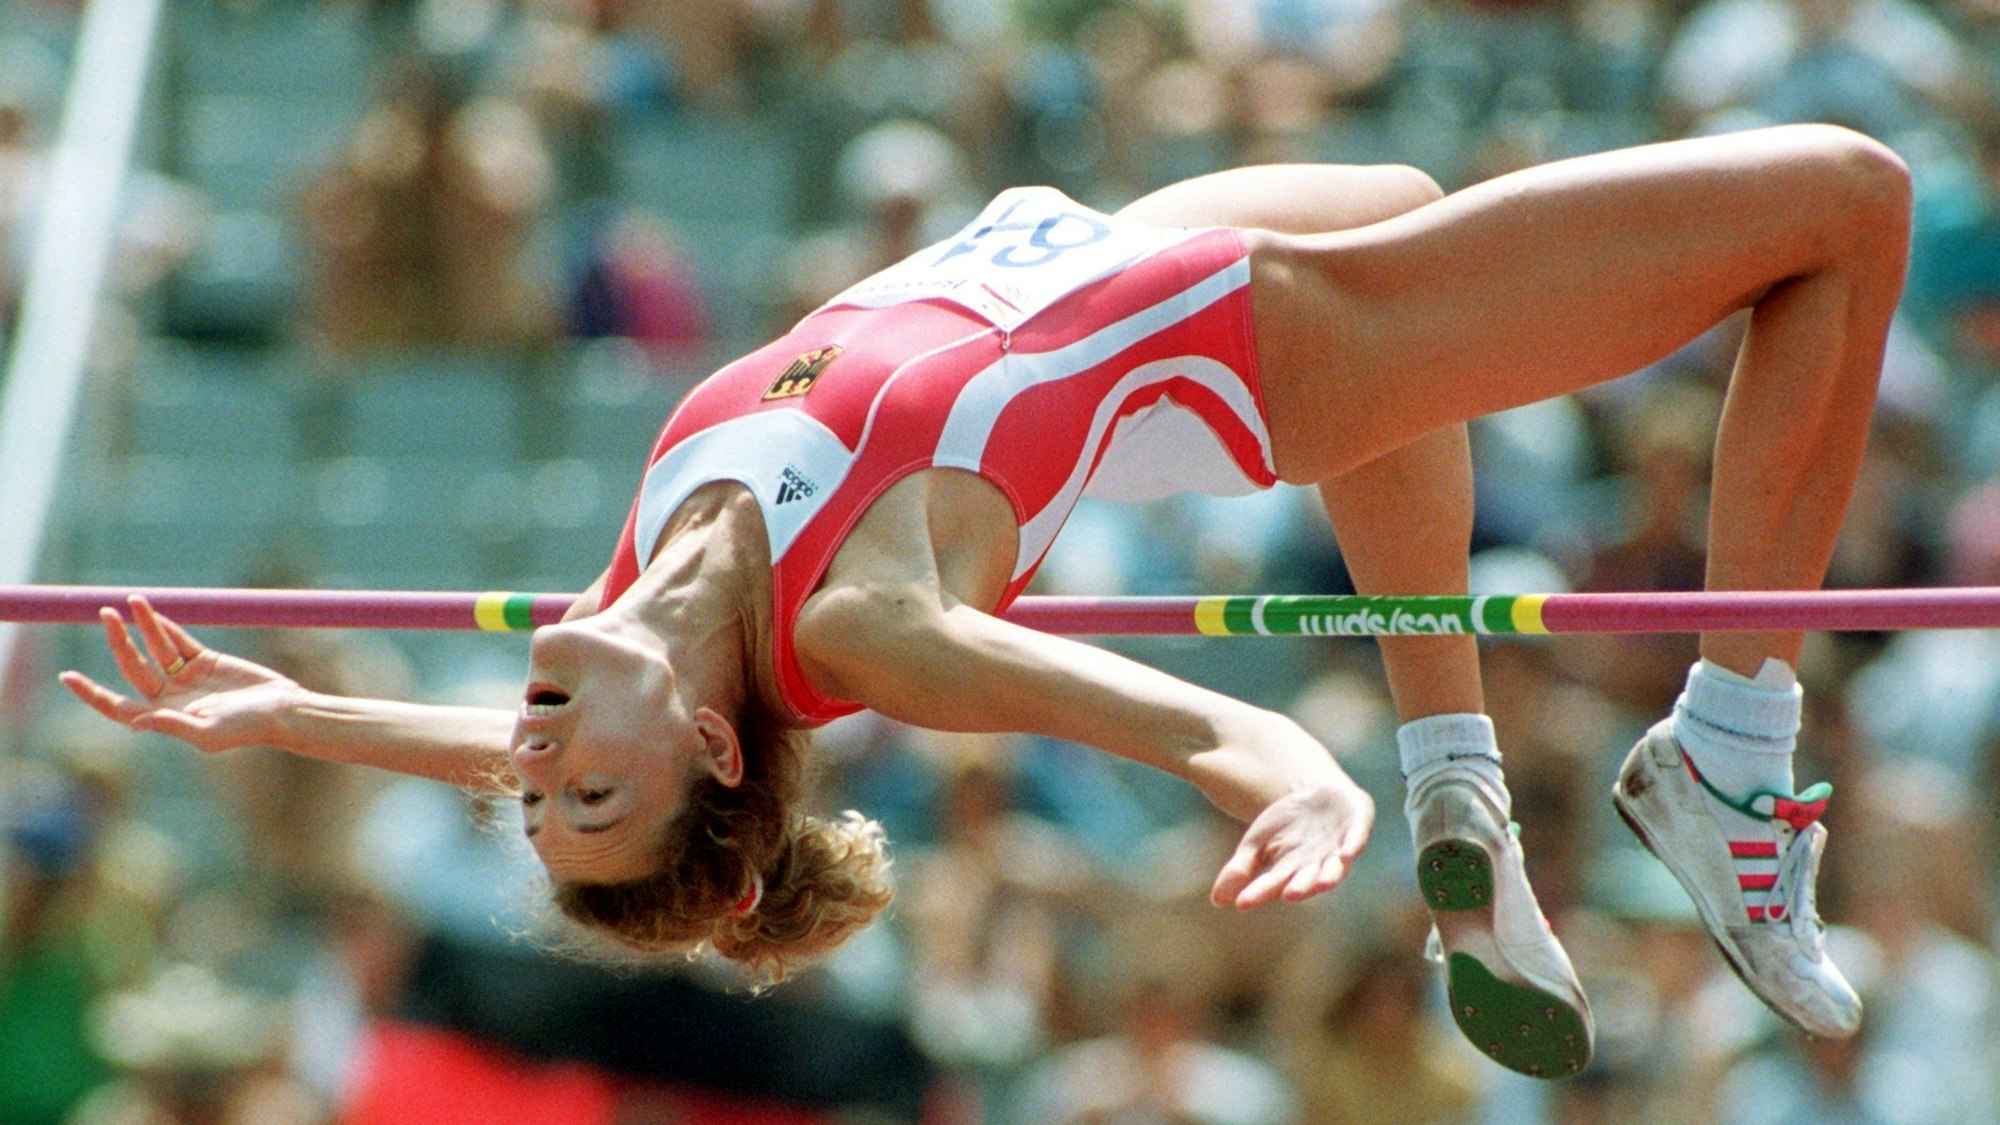 Die Hochspringerin Heike Henkel erreicht im Vorkampf bei den Olympischen Spielen in Barcelona die Qualifikationshöhe von 1,92 Meter. Man sieht sie bei einem Hochsprung in der Luft, direkt über der Latte.